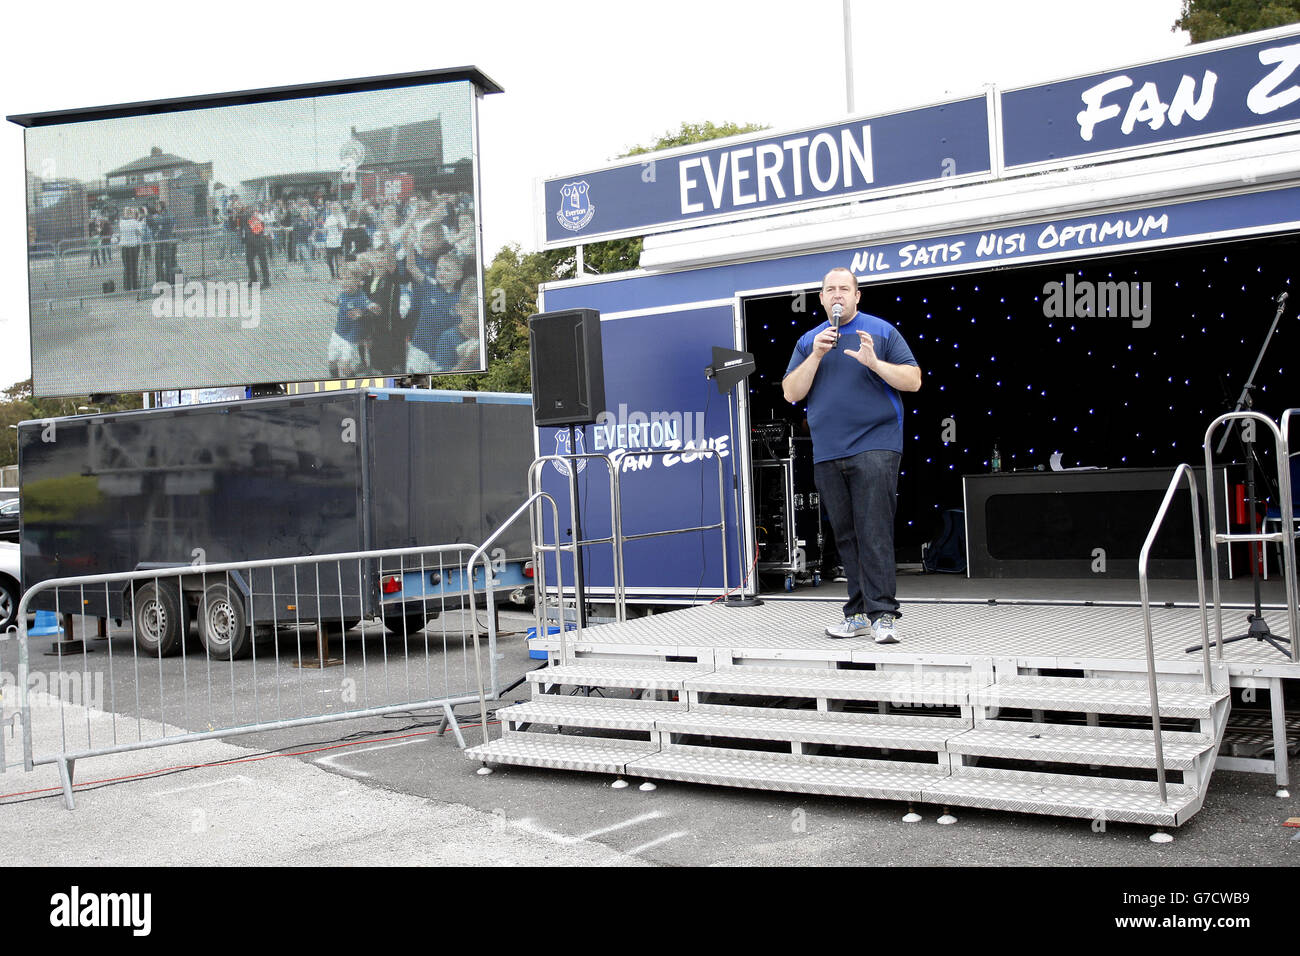 Fußball - Barclays Premier League - Everton gegen Crystal Palace - Goodison Park. Die Everton compere auf der Bühne während des Fan Zone Events Stockfoto